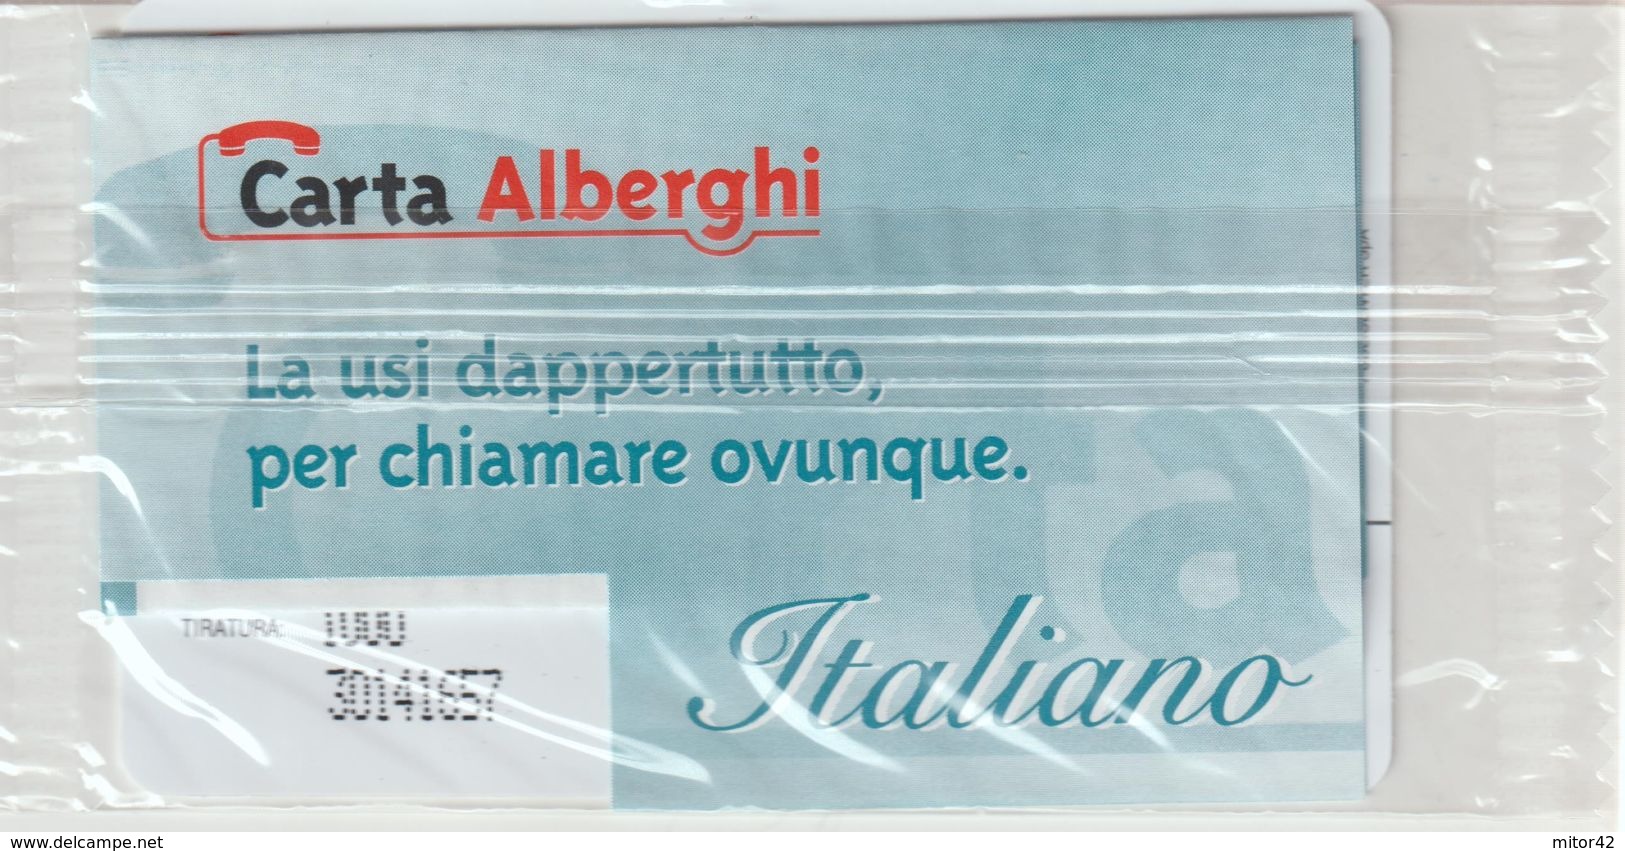 66-Carta Alberghi-Camping Village I Tre Moschettieri-Comacchio (FE)-Nuova In Confezione Originale - Usi Speciali